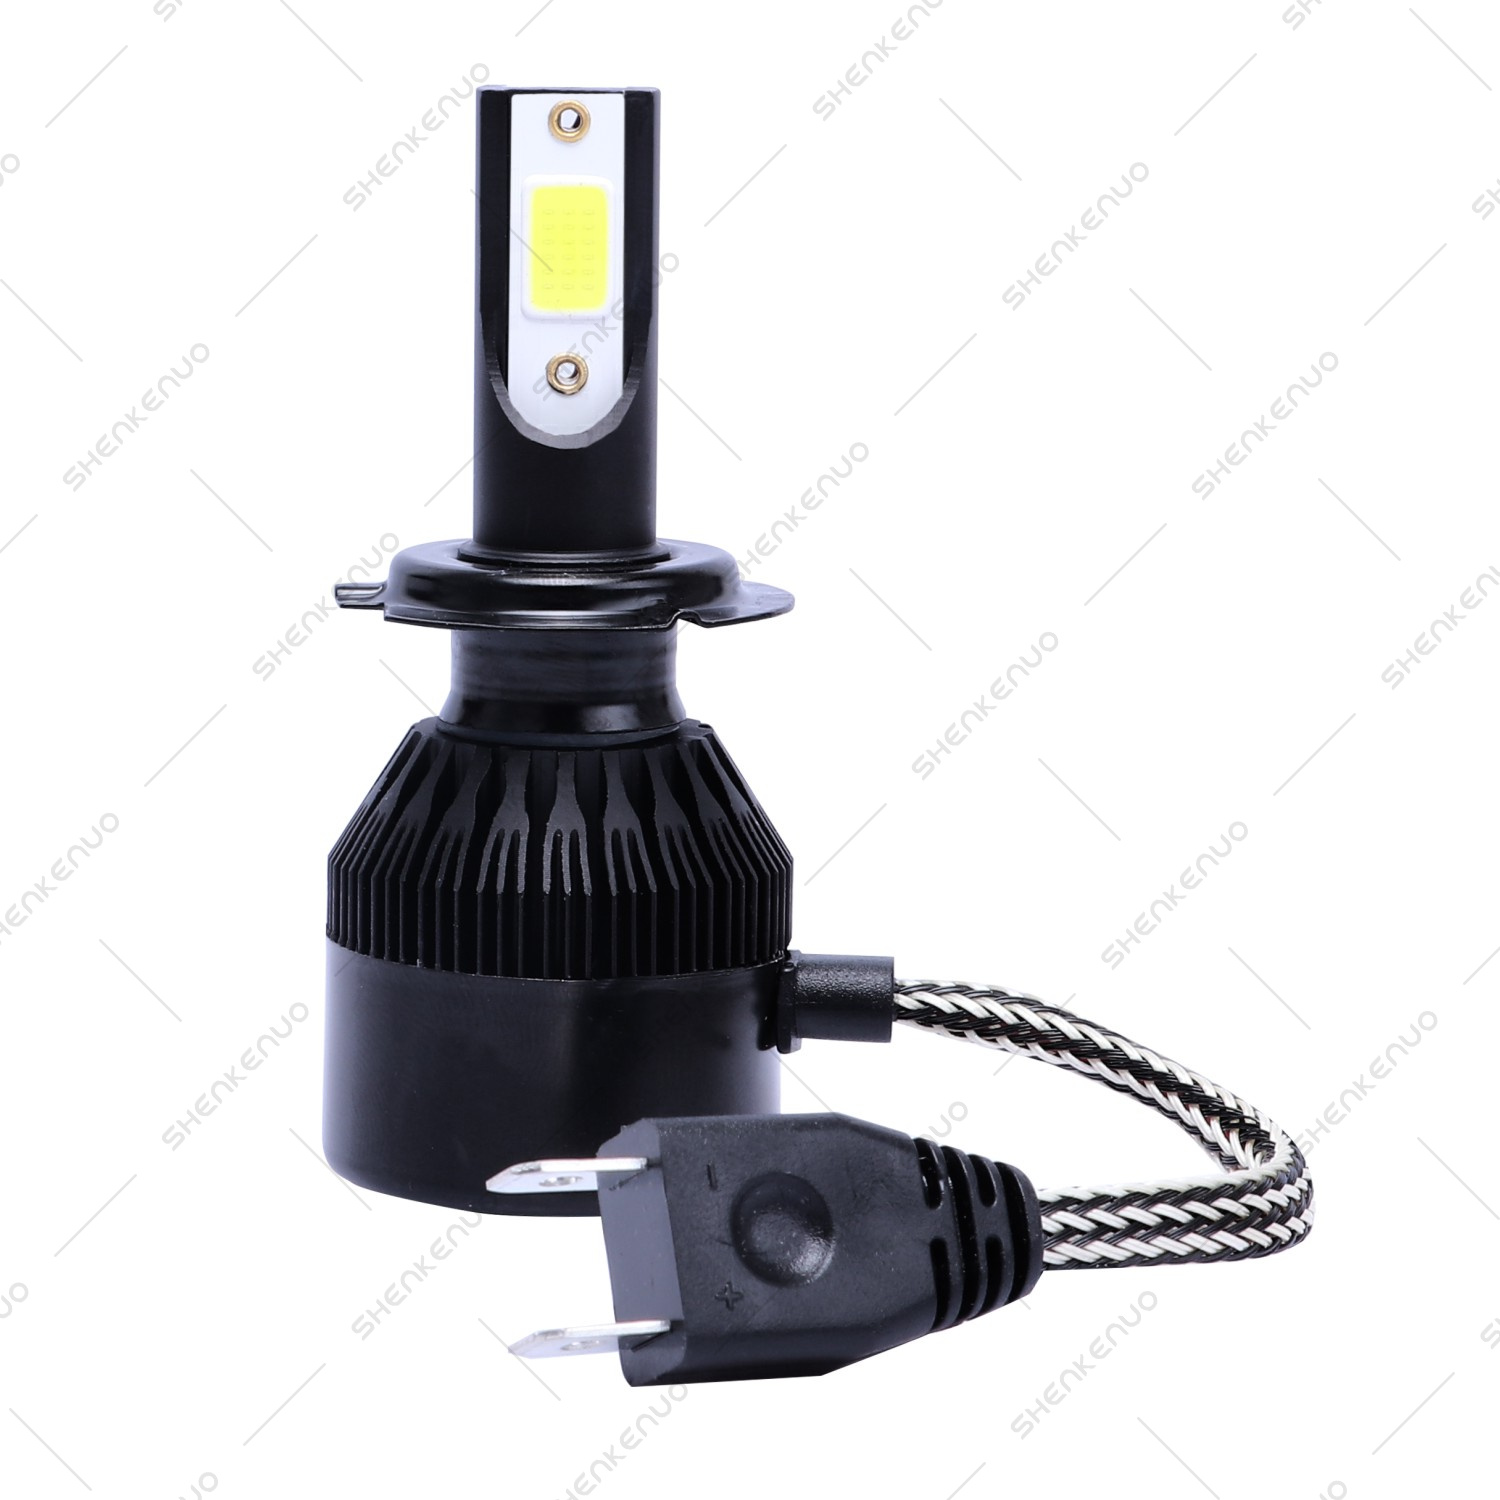 For GMC Acadia 2007 2008 2009 - 2011 2012 LED Headlight Bulbs High Low Beam C9B | eBay 2008 Gmc Acadia Low Beam Headlight Bulb